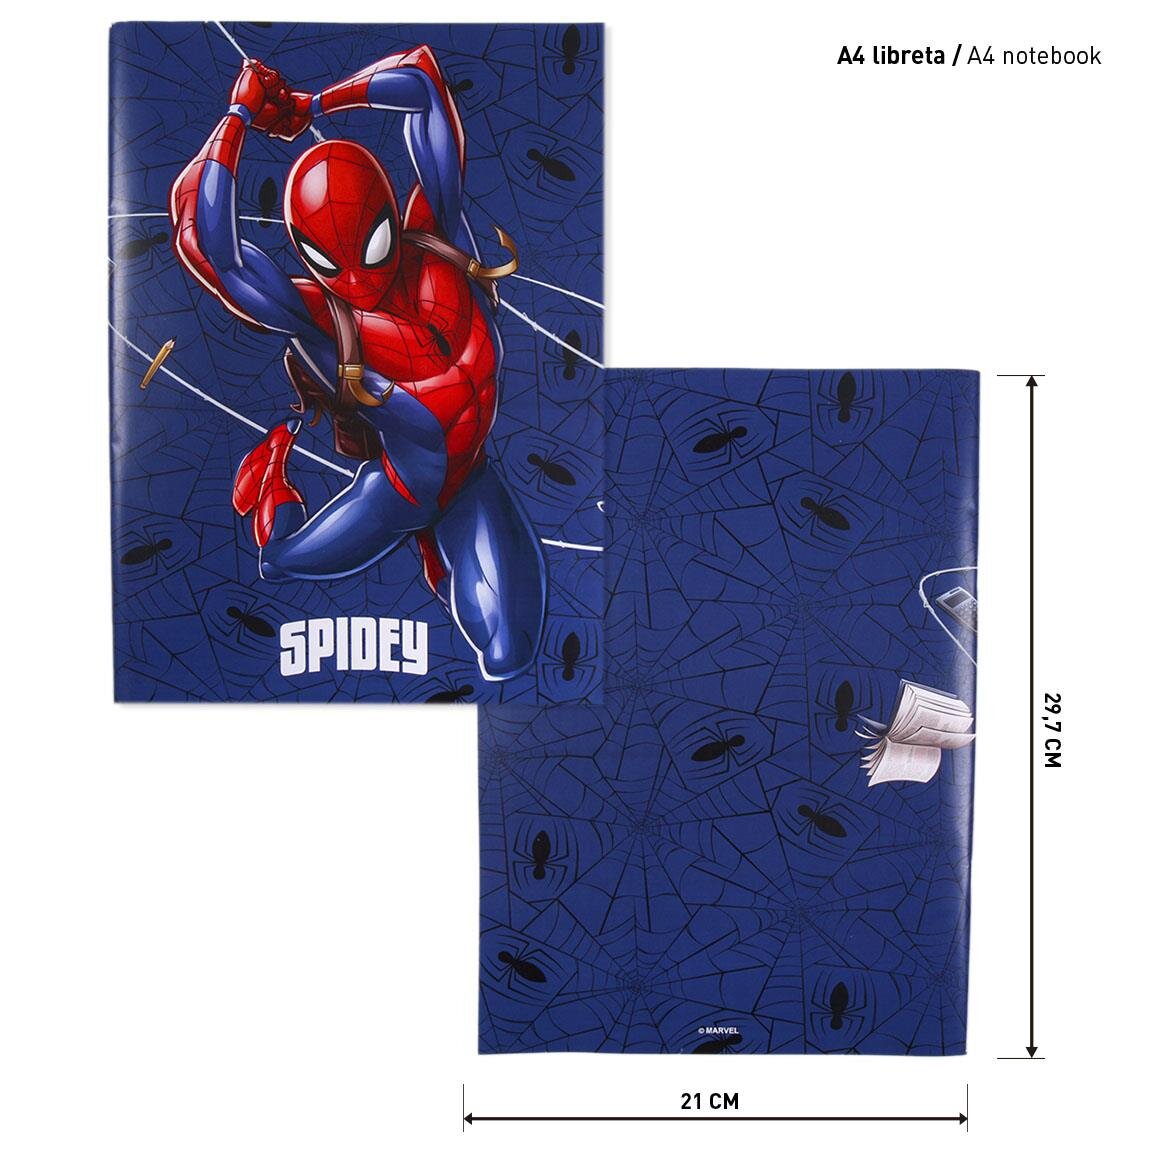 Spiderman - Ritset 16-pack